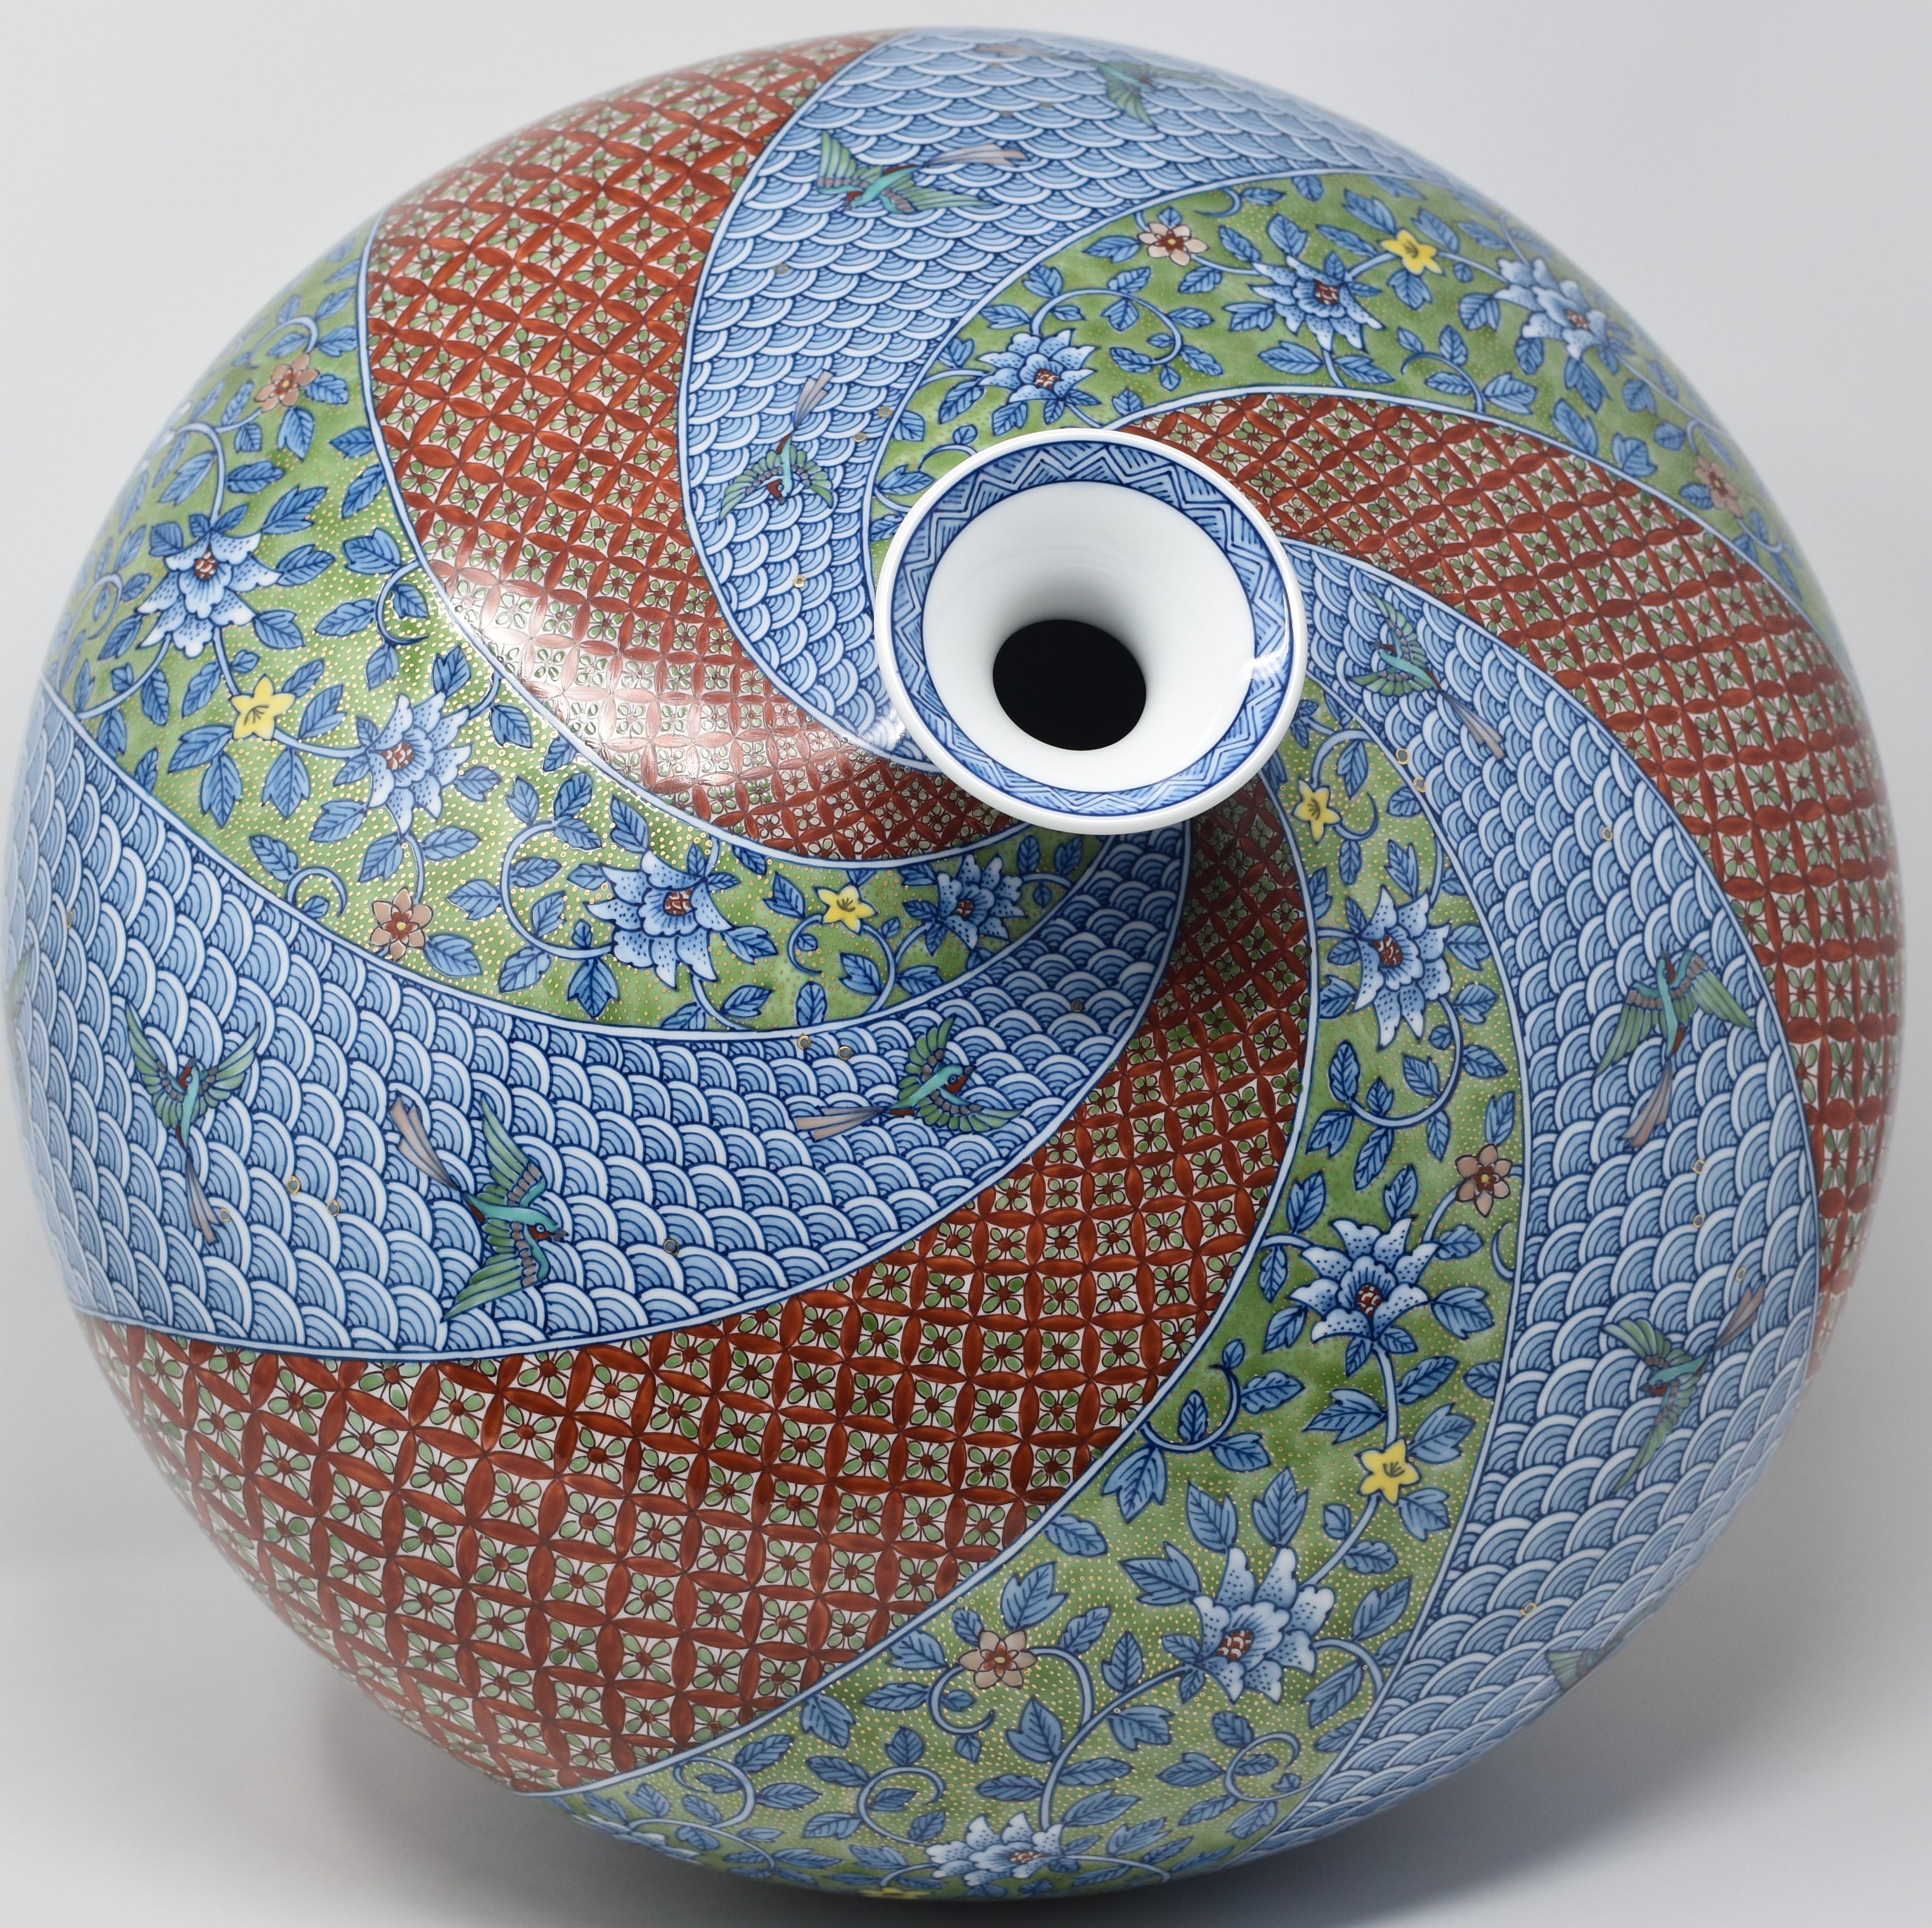 Blaugrüne Porzellanvase eines zeitgenössischen japanischen Meisterkünstlers (21. Jahrhundert und zeitgenössisch)